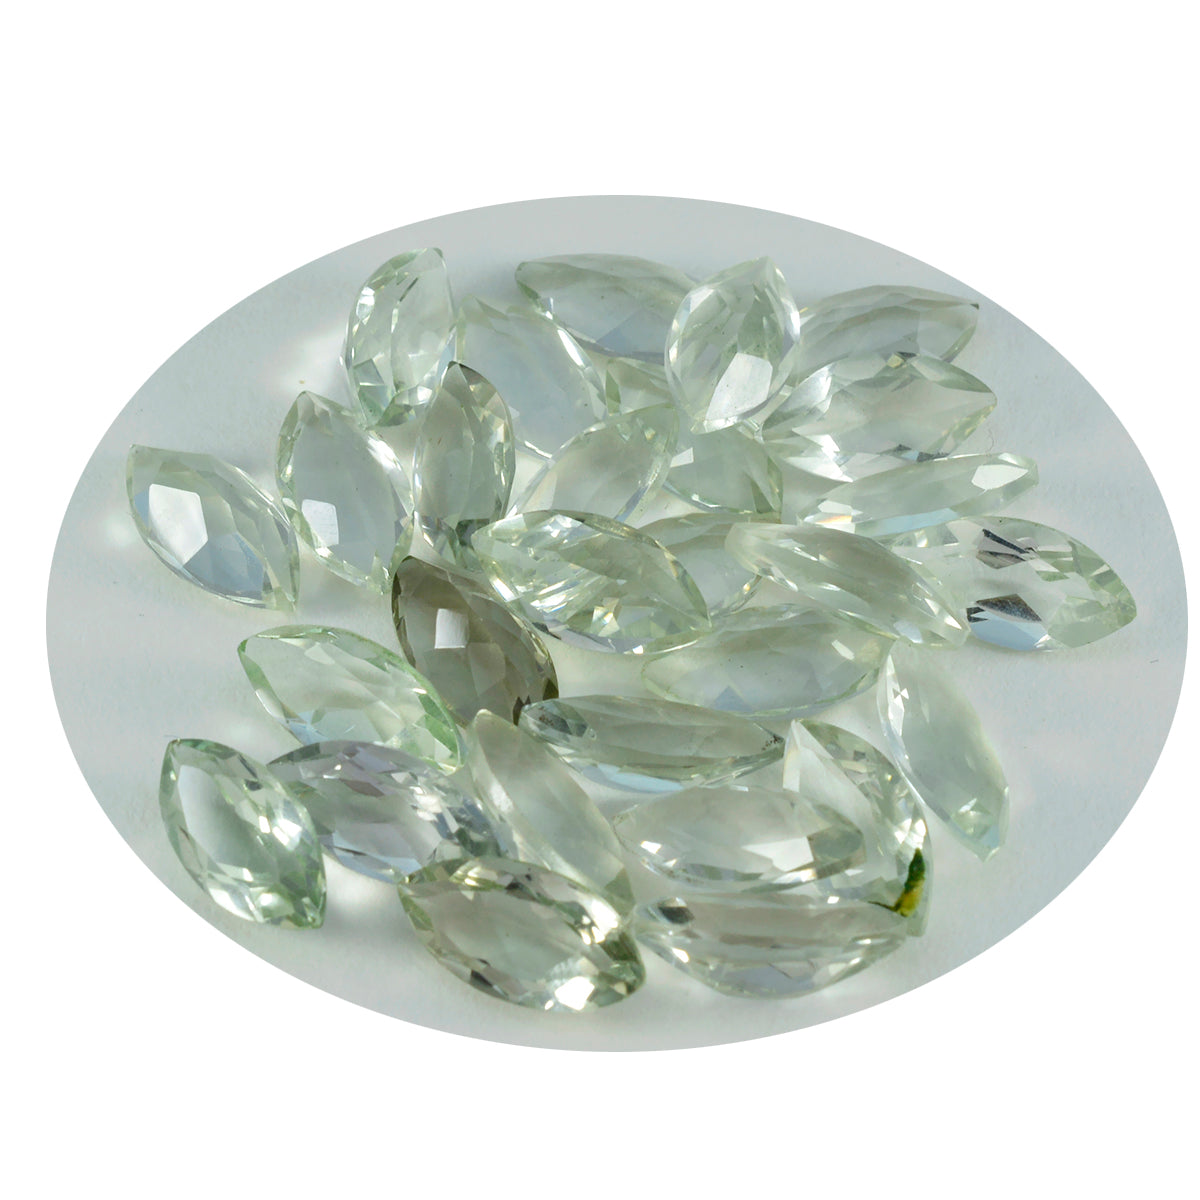 riyogems 1шт зеленый аметист ограненный 3x6 мм форма маркиза красивый качественный драгоценный камень